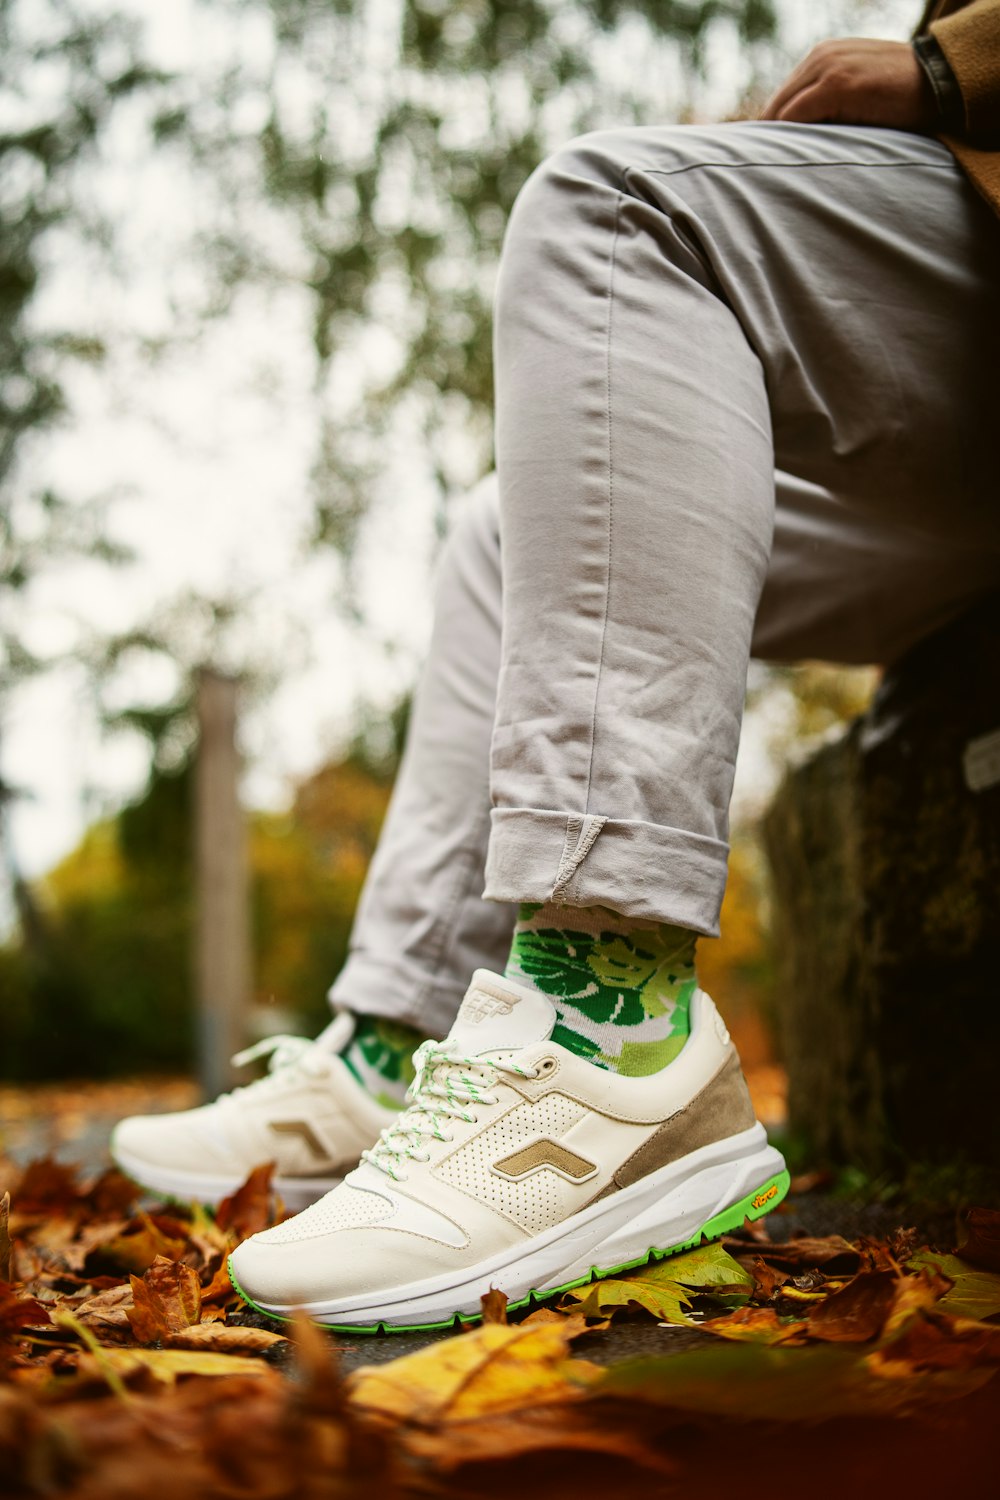 Foto persona con pantalones grises y zapatos deportivos nike verdes y blancos – Zapatilla gratis en Unsplash